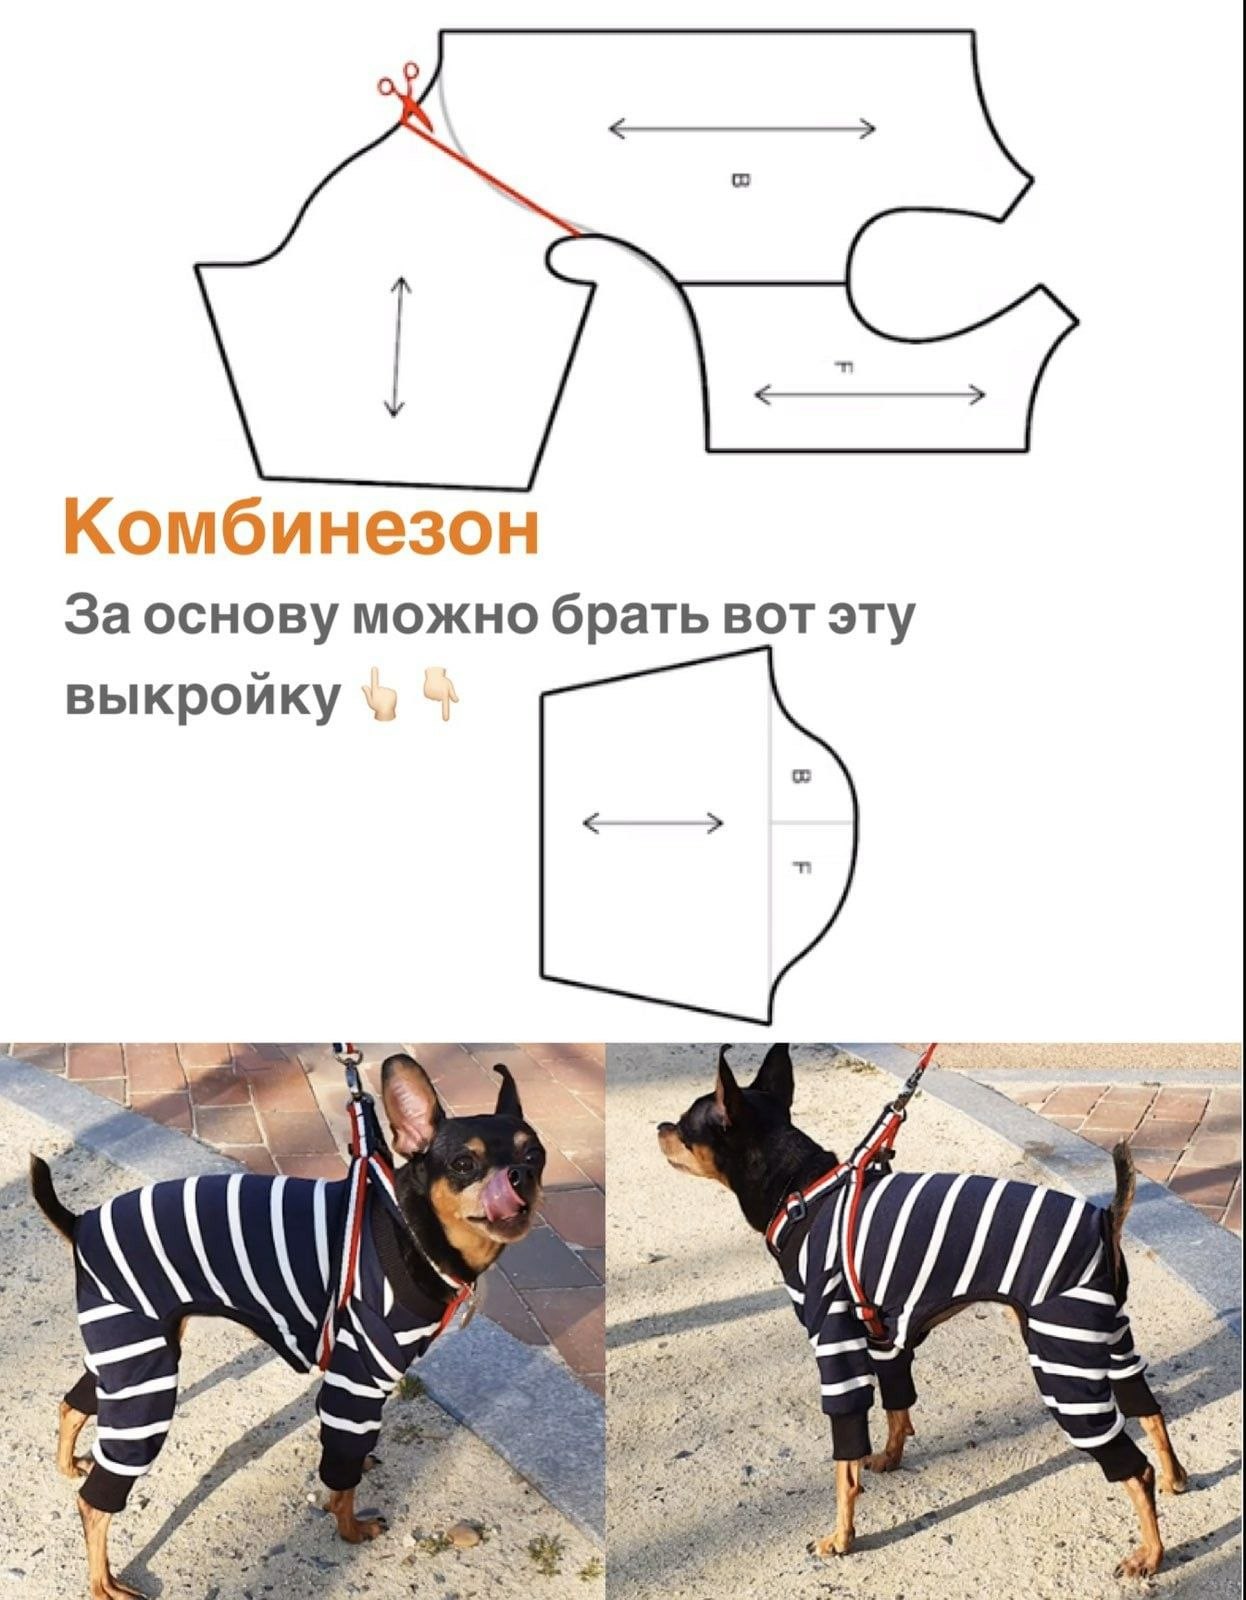 Как сшить майку для собаки своими руками - выкройка — Интернет-магазин одежды для собак Zoostyle